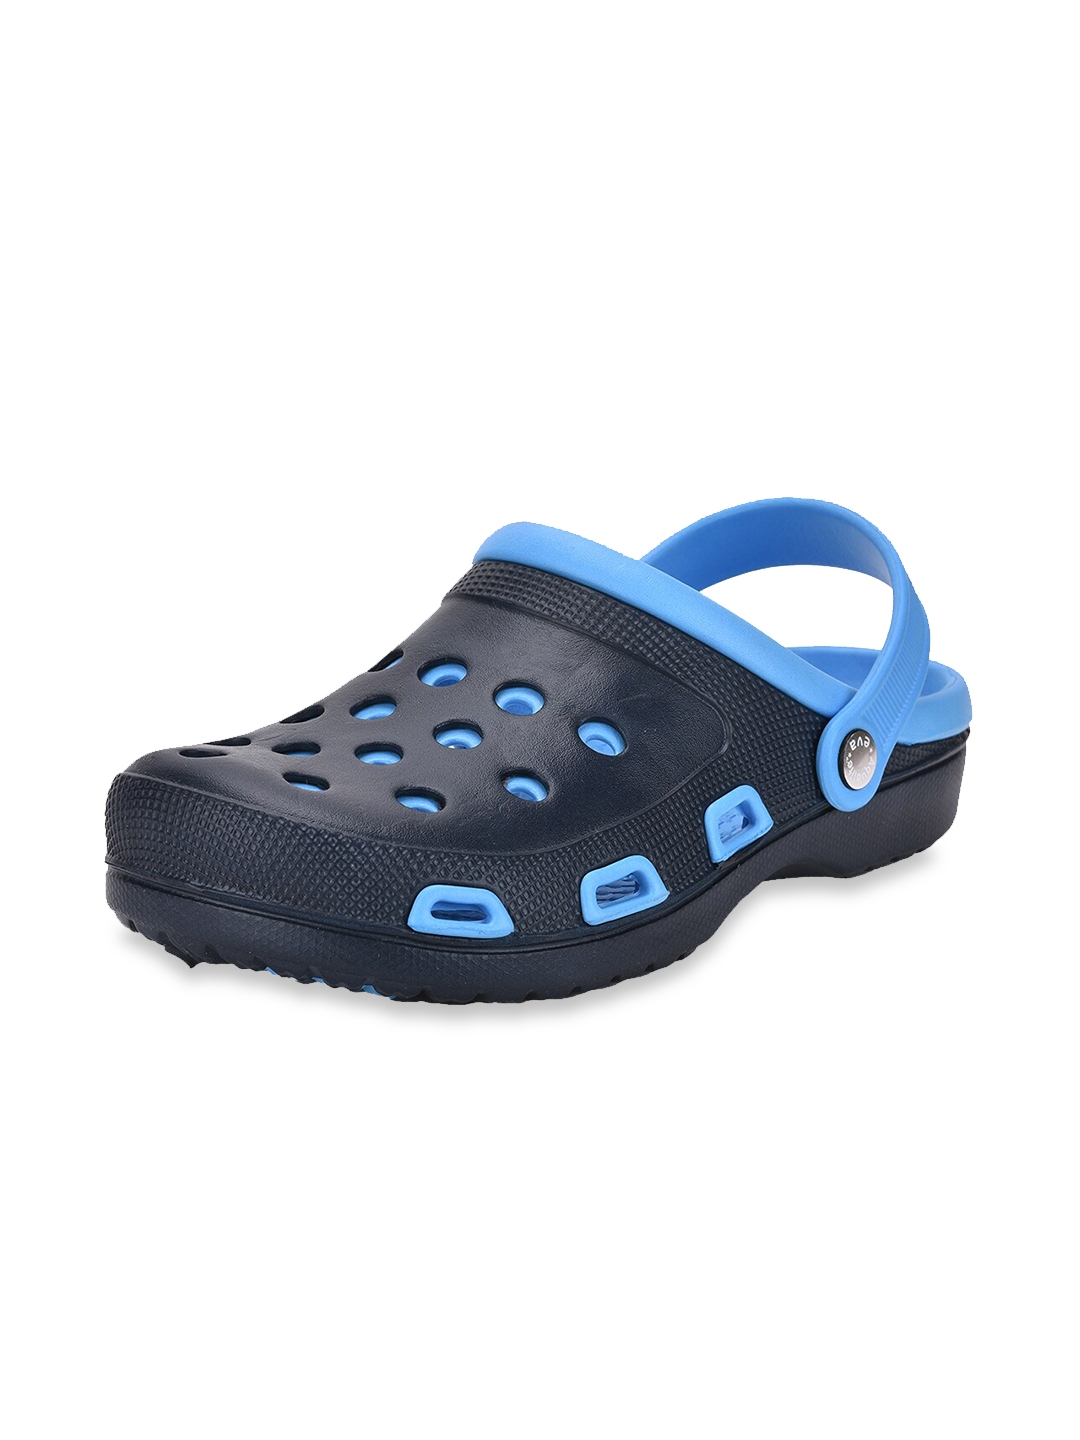 Buy Aqualite Men Navy Blue & Blue PU Clogs - Flip Flops for Men ...